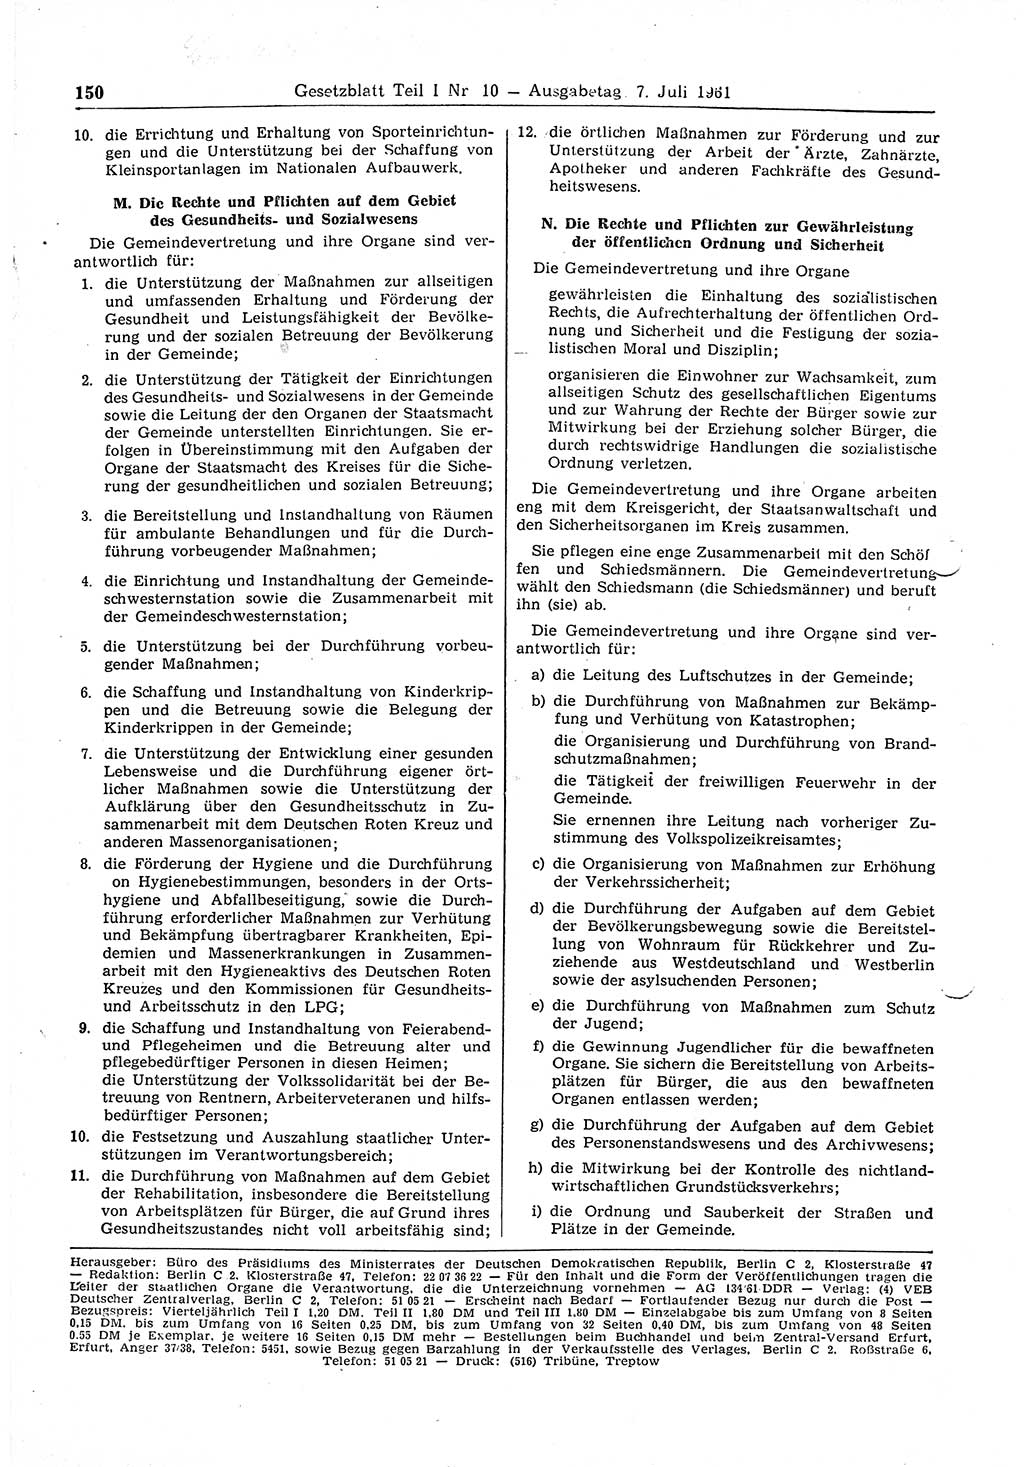 Gesetzblatt (GBl.) der Deutschen Demokratischen Republik (DDR) Teil Ⅰ 1961, Seite 150 (GBl. DDR Ⅰ 1961, S. 150)